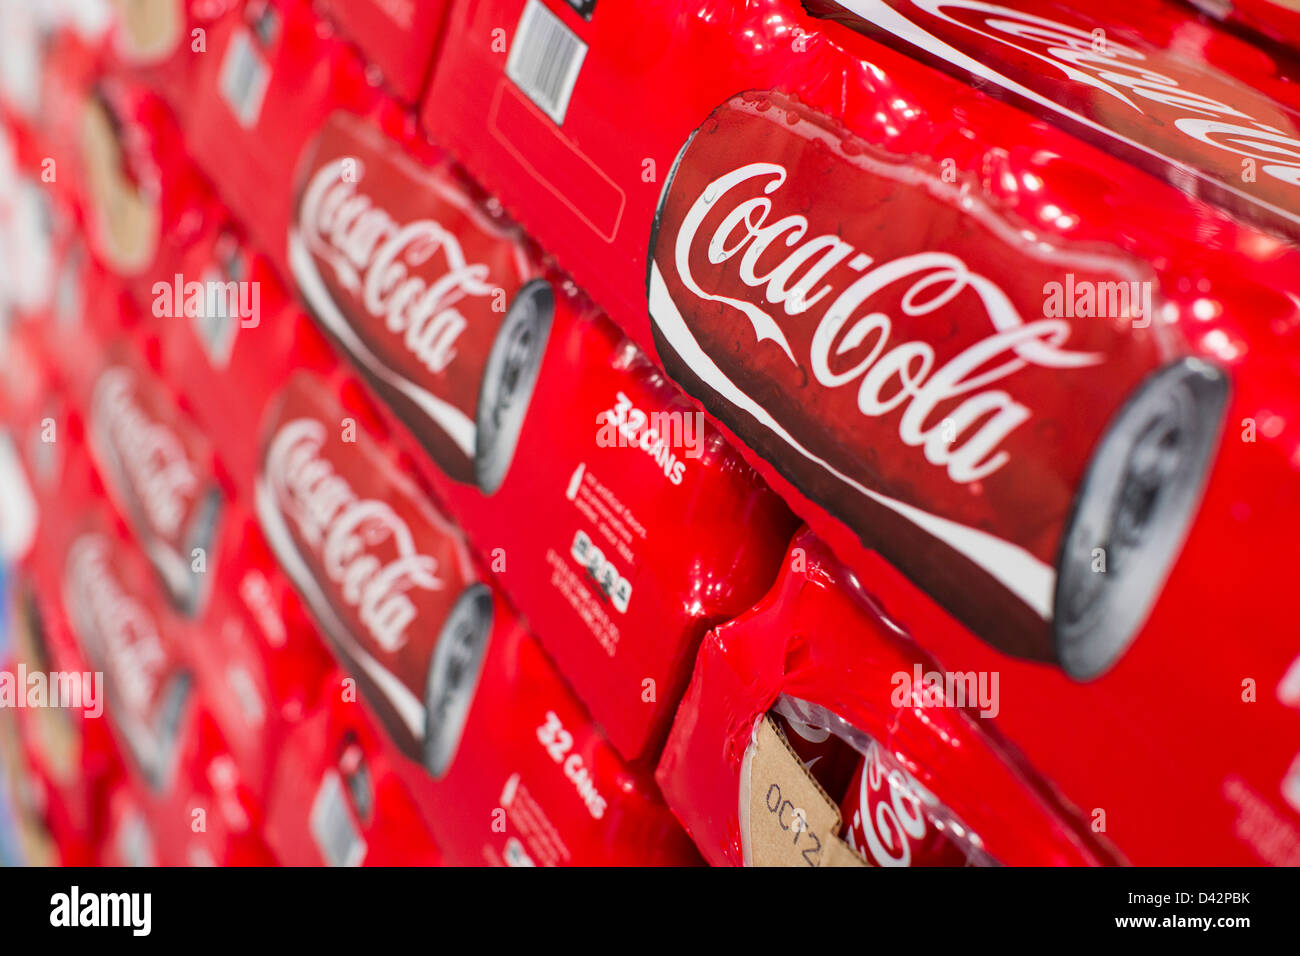 Produits Coca-Cola sur l'affichage à un entrepôt Costco Wholesale Club. Banque D'Images